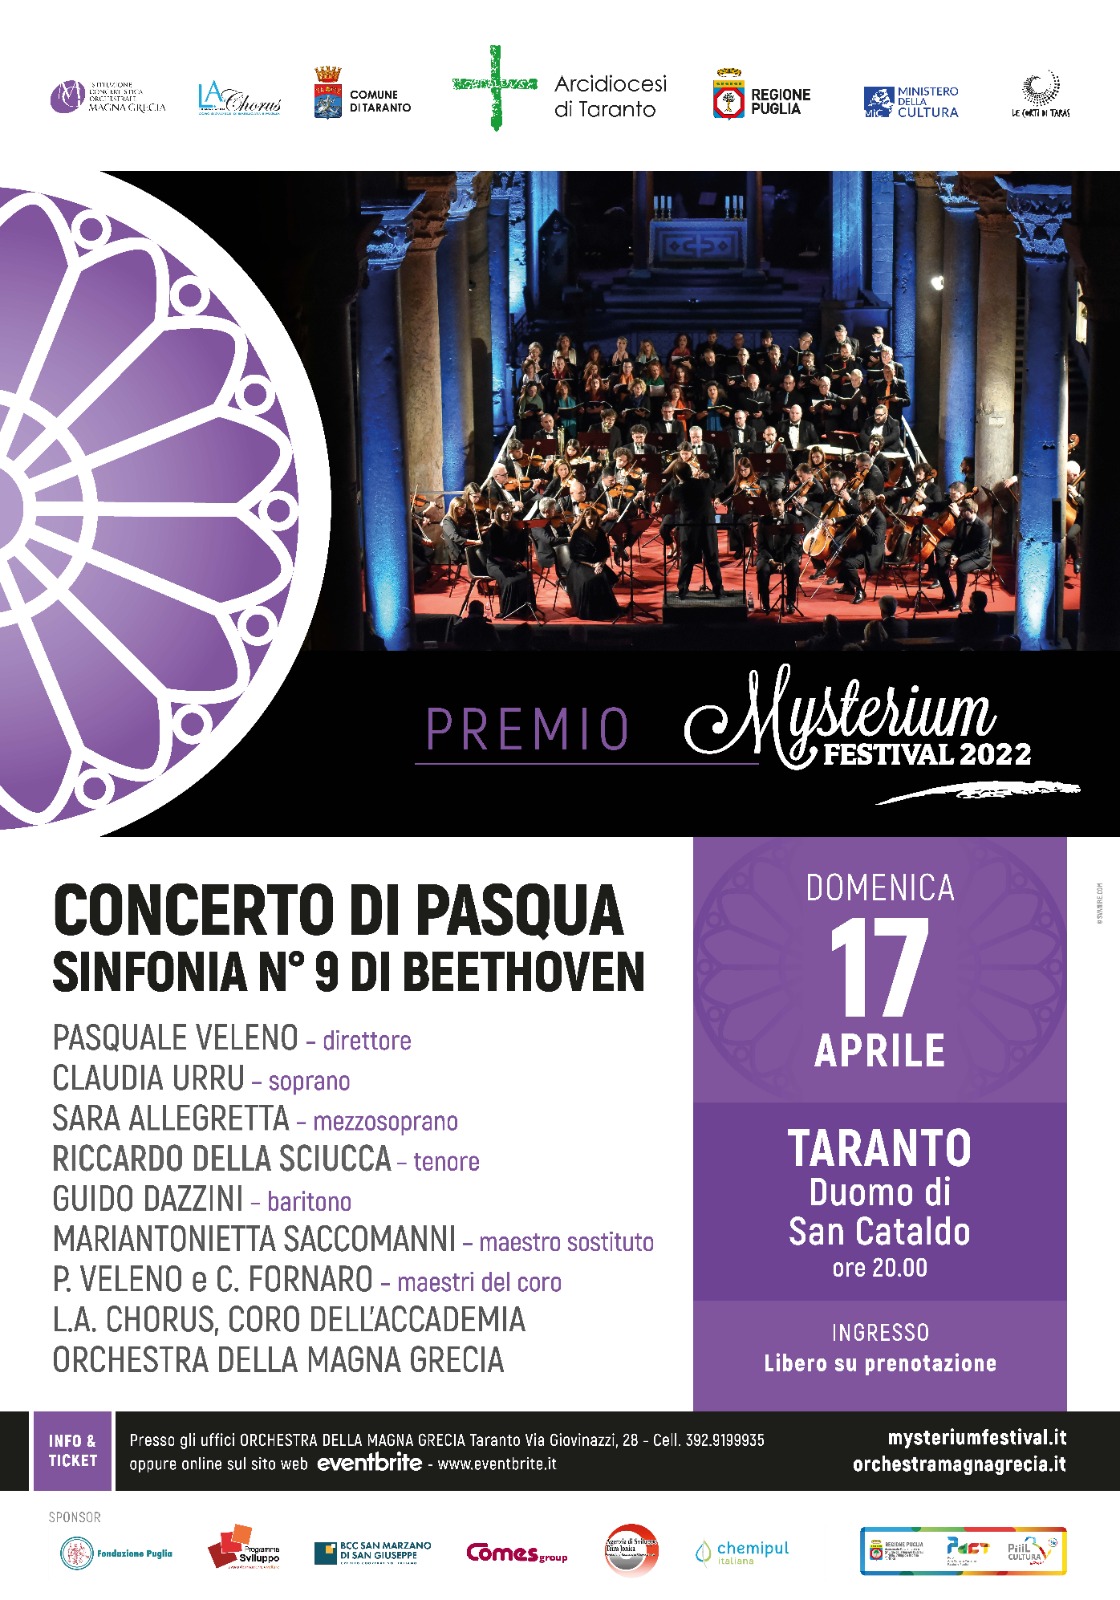 MYSTERIUM FESTIVAL - Domenica 17 aprile, duomo di San Cataldo Concerto di Pasqua